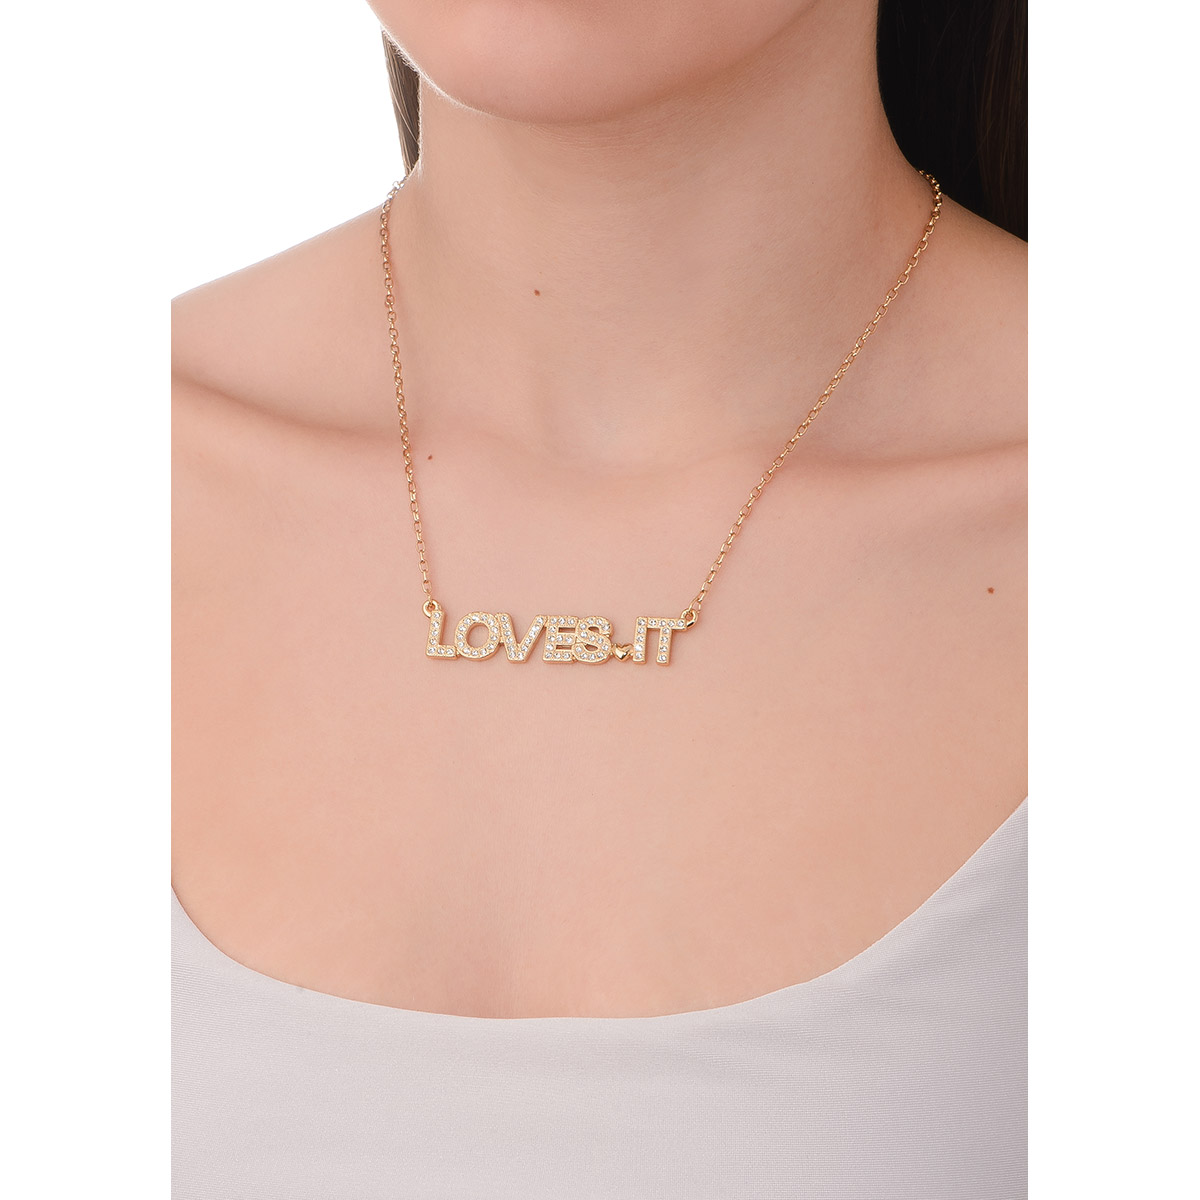 Collar loves it, de 42 cm + 10 cm de ext, en baño de oro, con piedras en tono cristal.